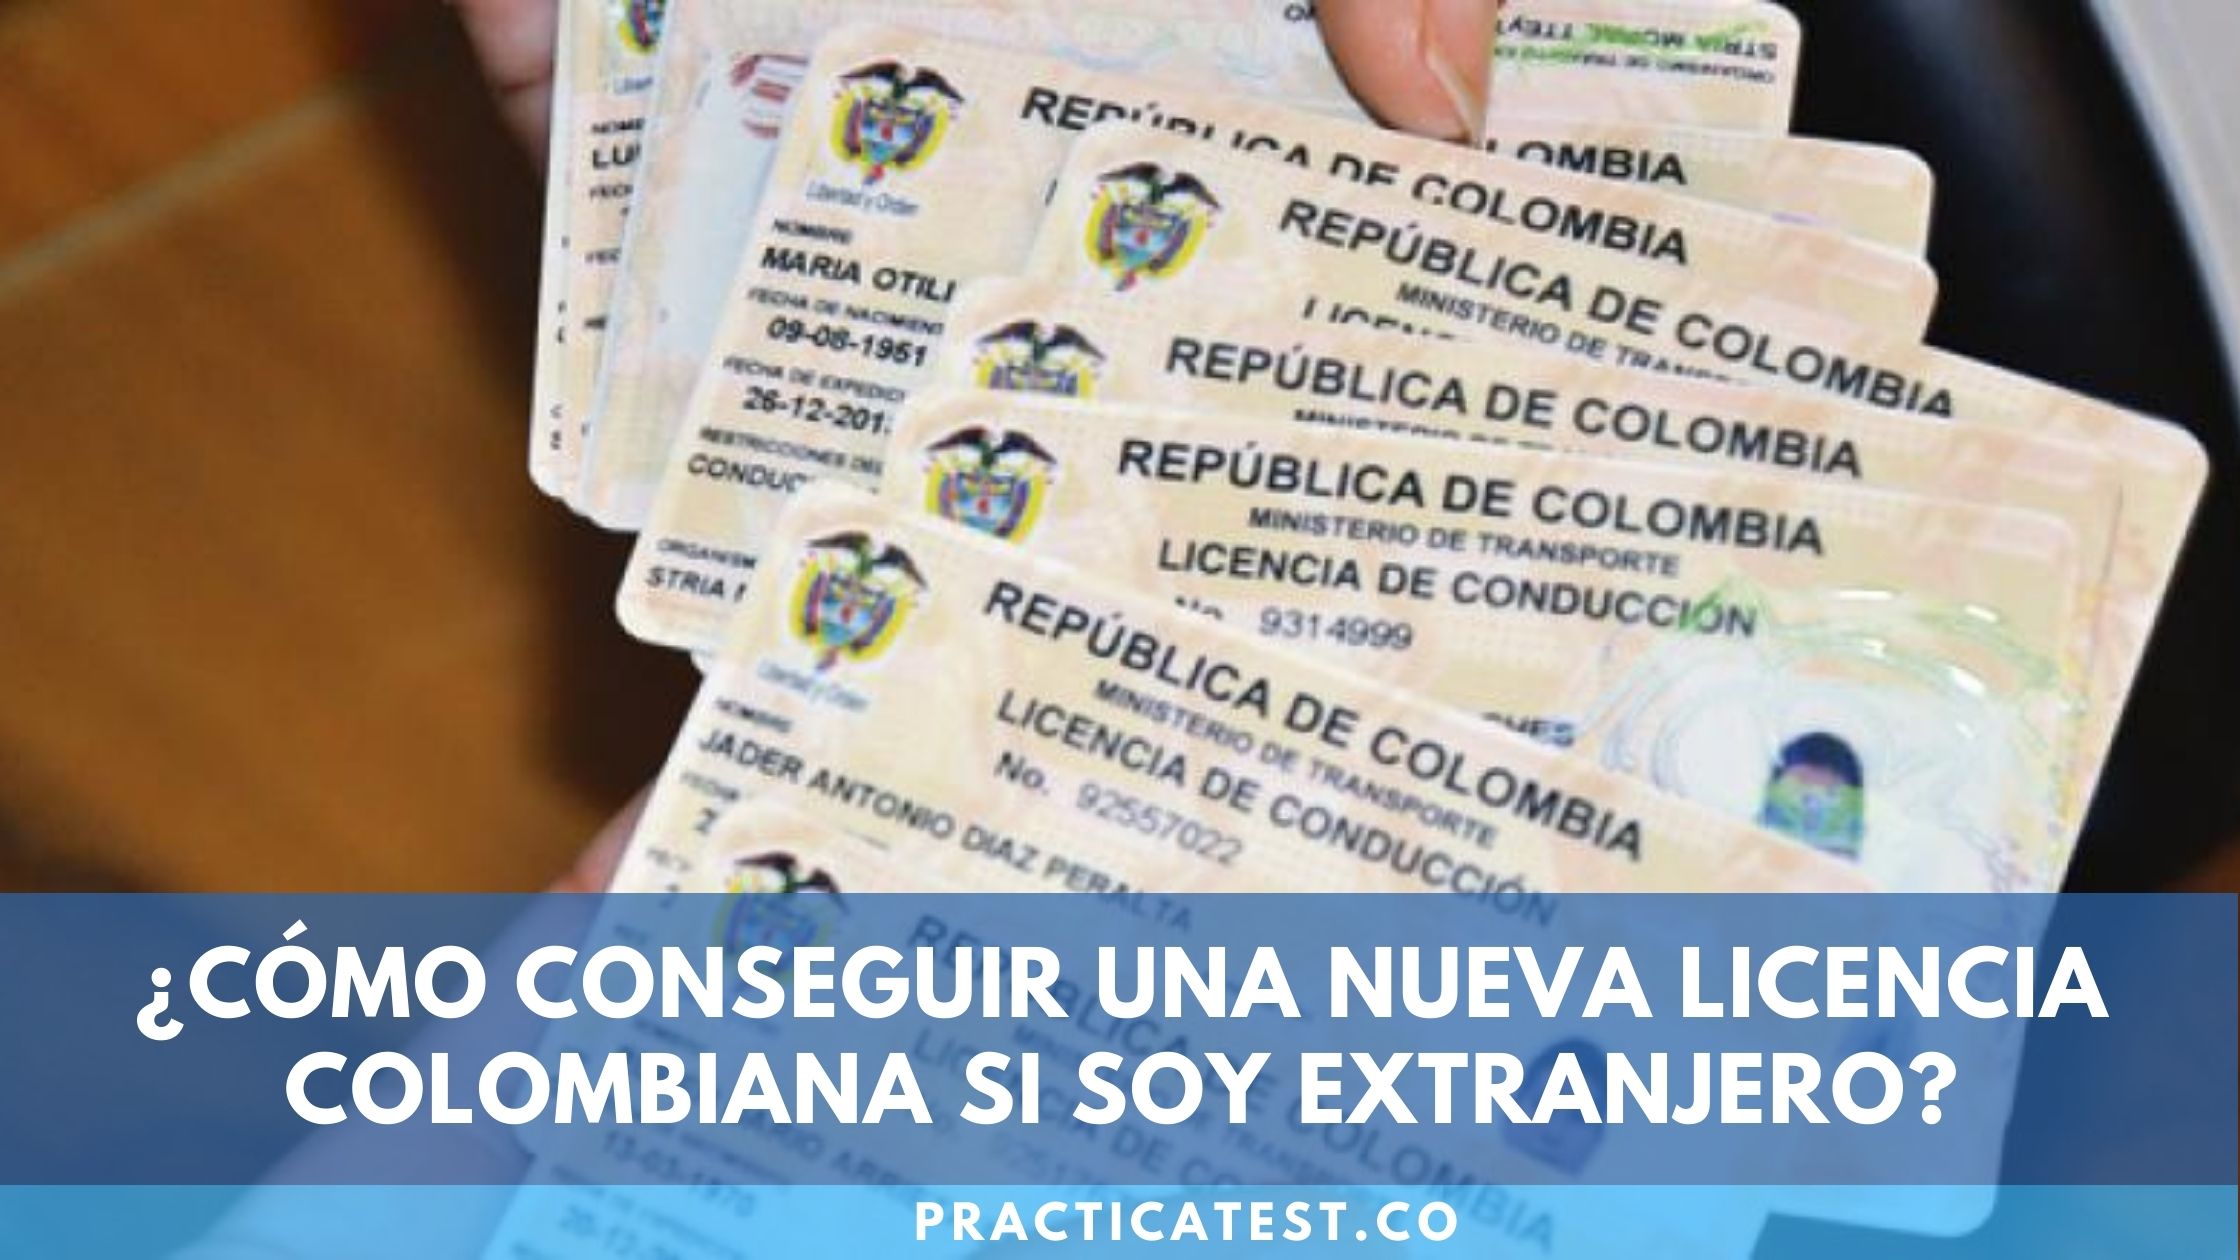 Licencia de conducción para extranjeros en Colombia